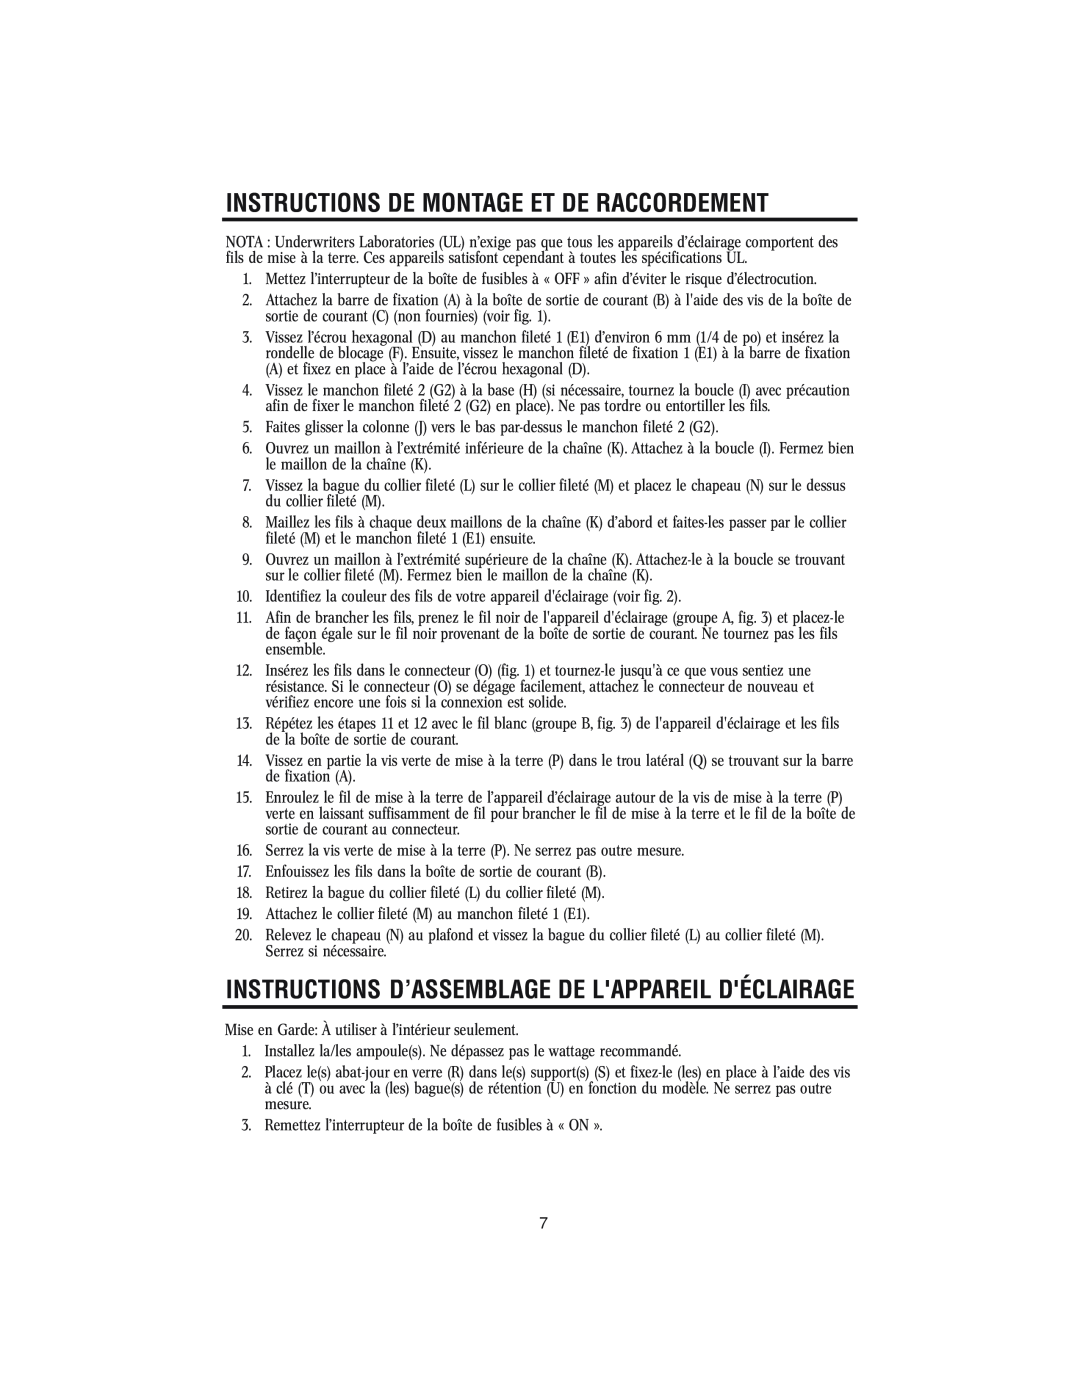 Westinghouse 62204 Instructions De Montage Et De Raccordement, Instructions D’Assemblage De Lappareil Déclairage 